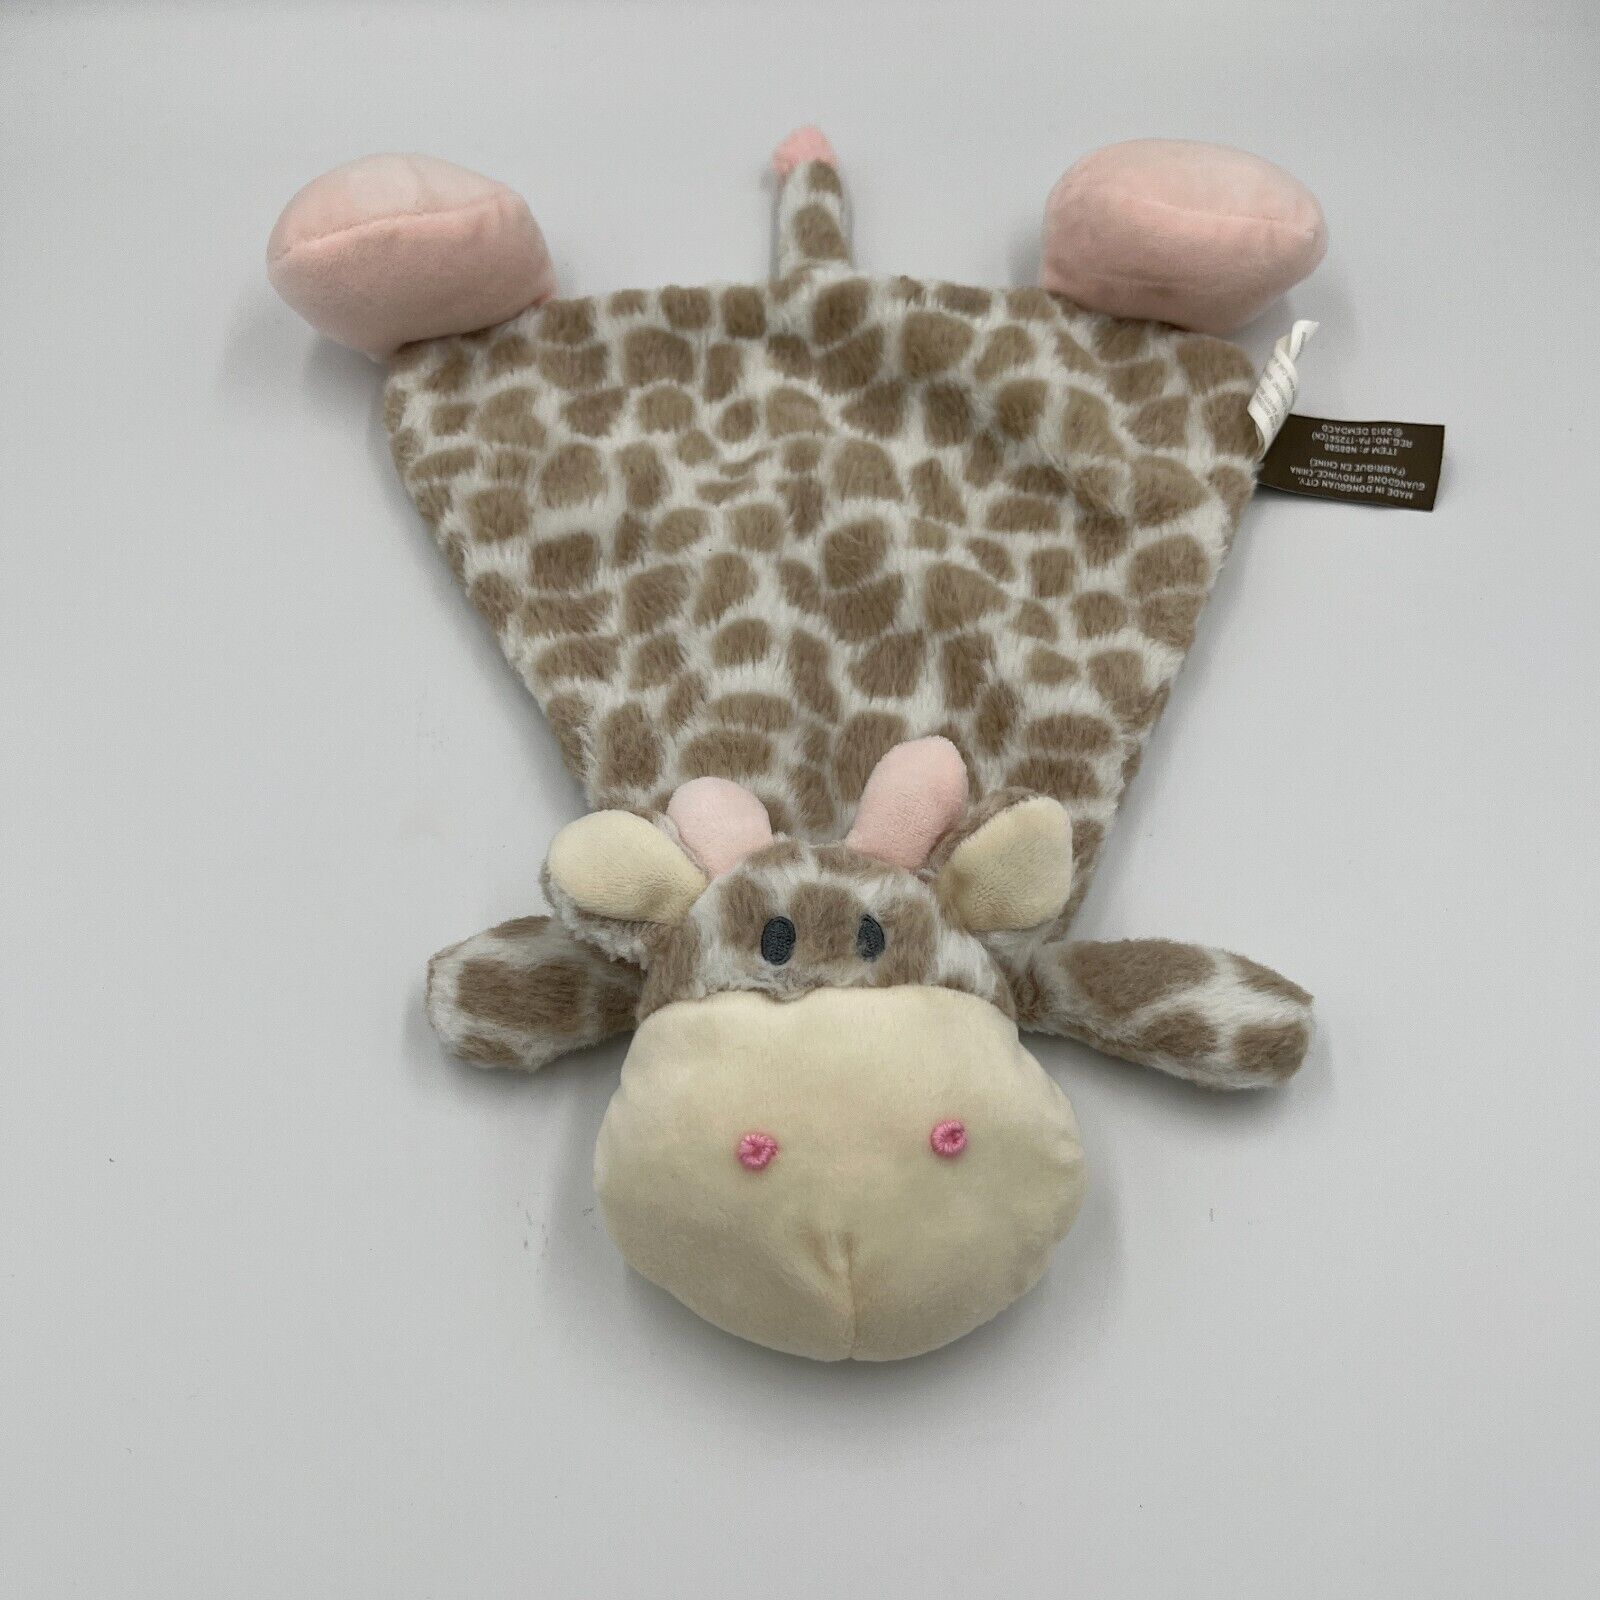 Demdaco Nat & Jules Luxurious Baby Sadie Giraffe 2013 Lovey Security Blanket - $24.18